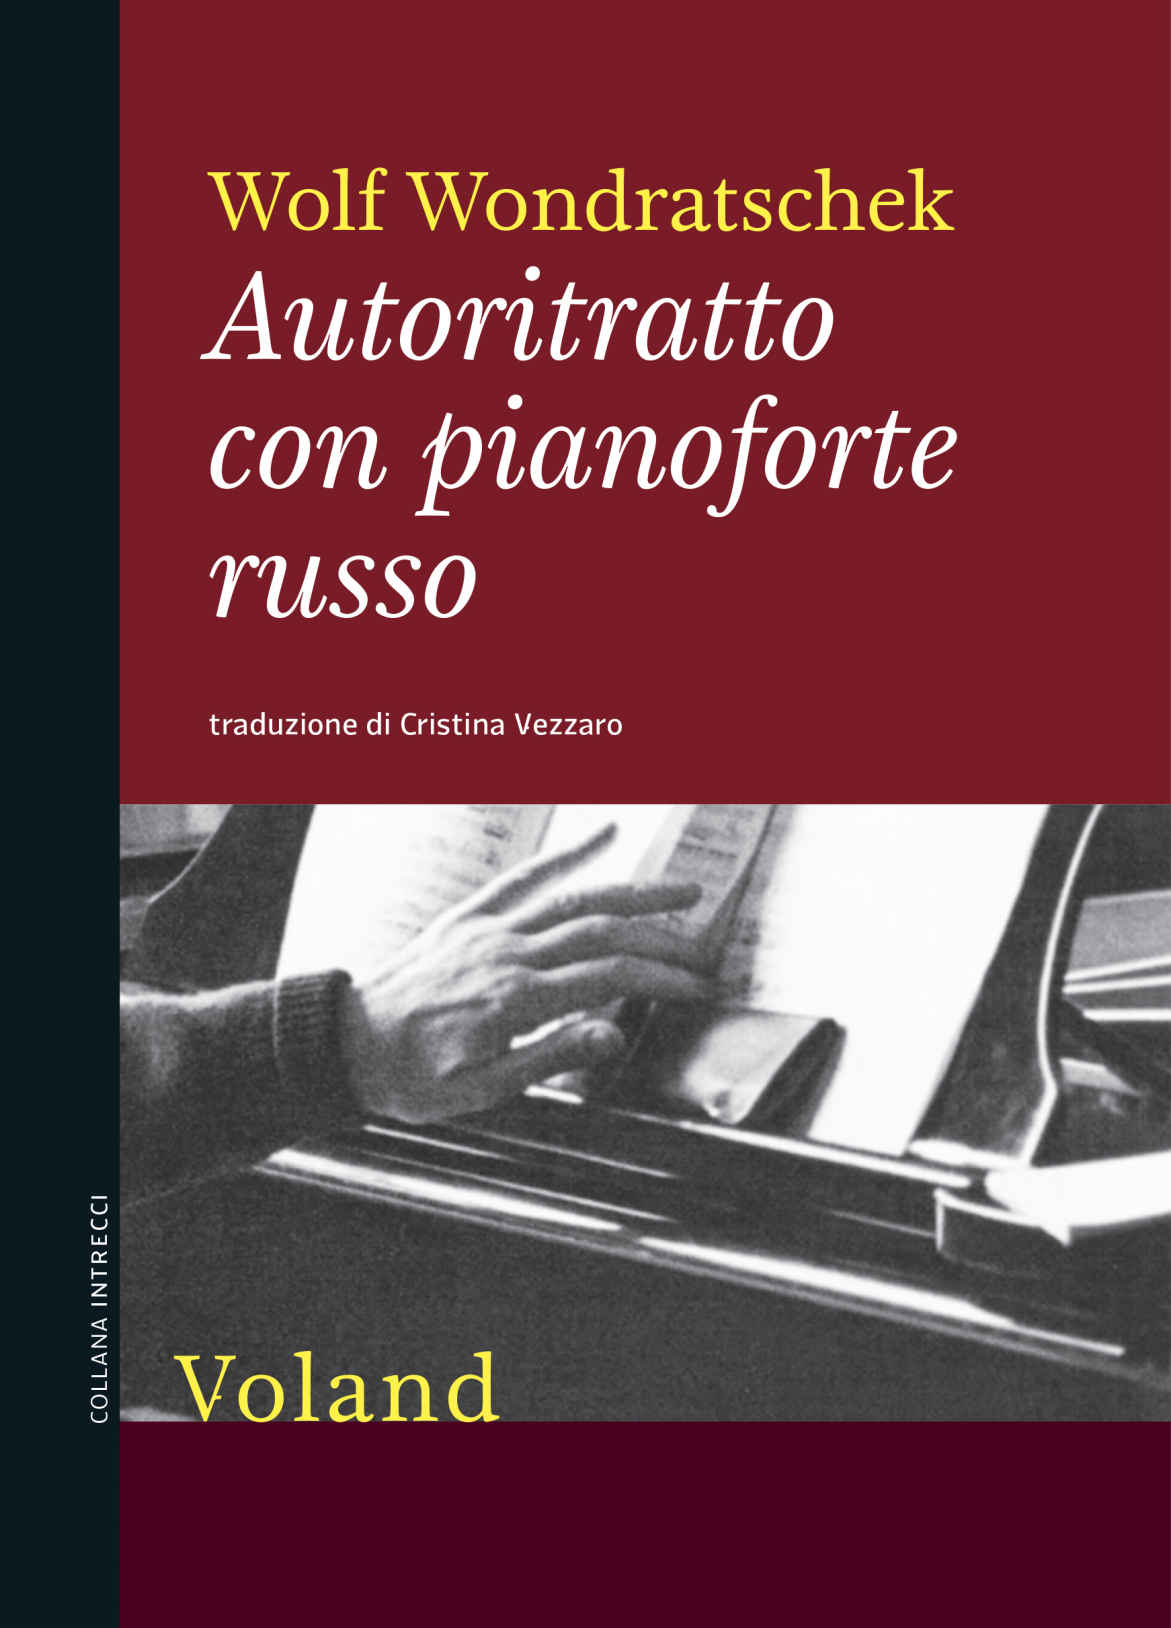 Libri Wondratschek Wolf - Autoritratto Con Pianoforte Russo NUOVO SIGILLATO, EDIZIONE DEL 18/03/2021 SUBITO DISPONIBILE